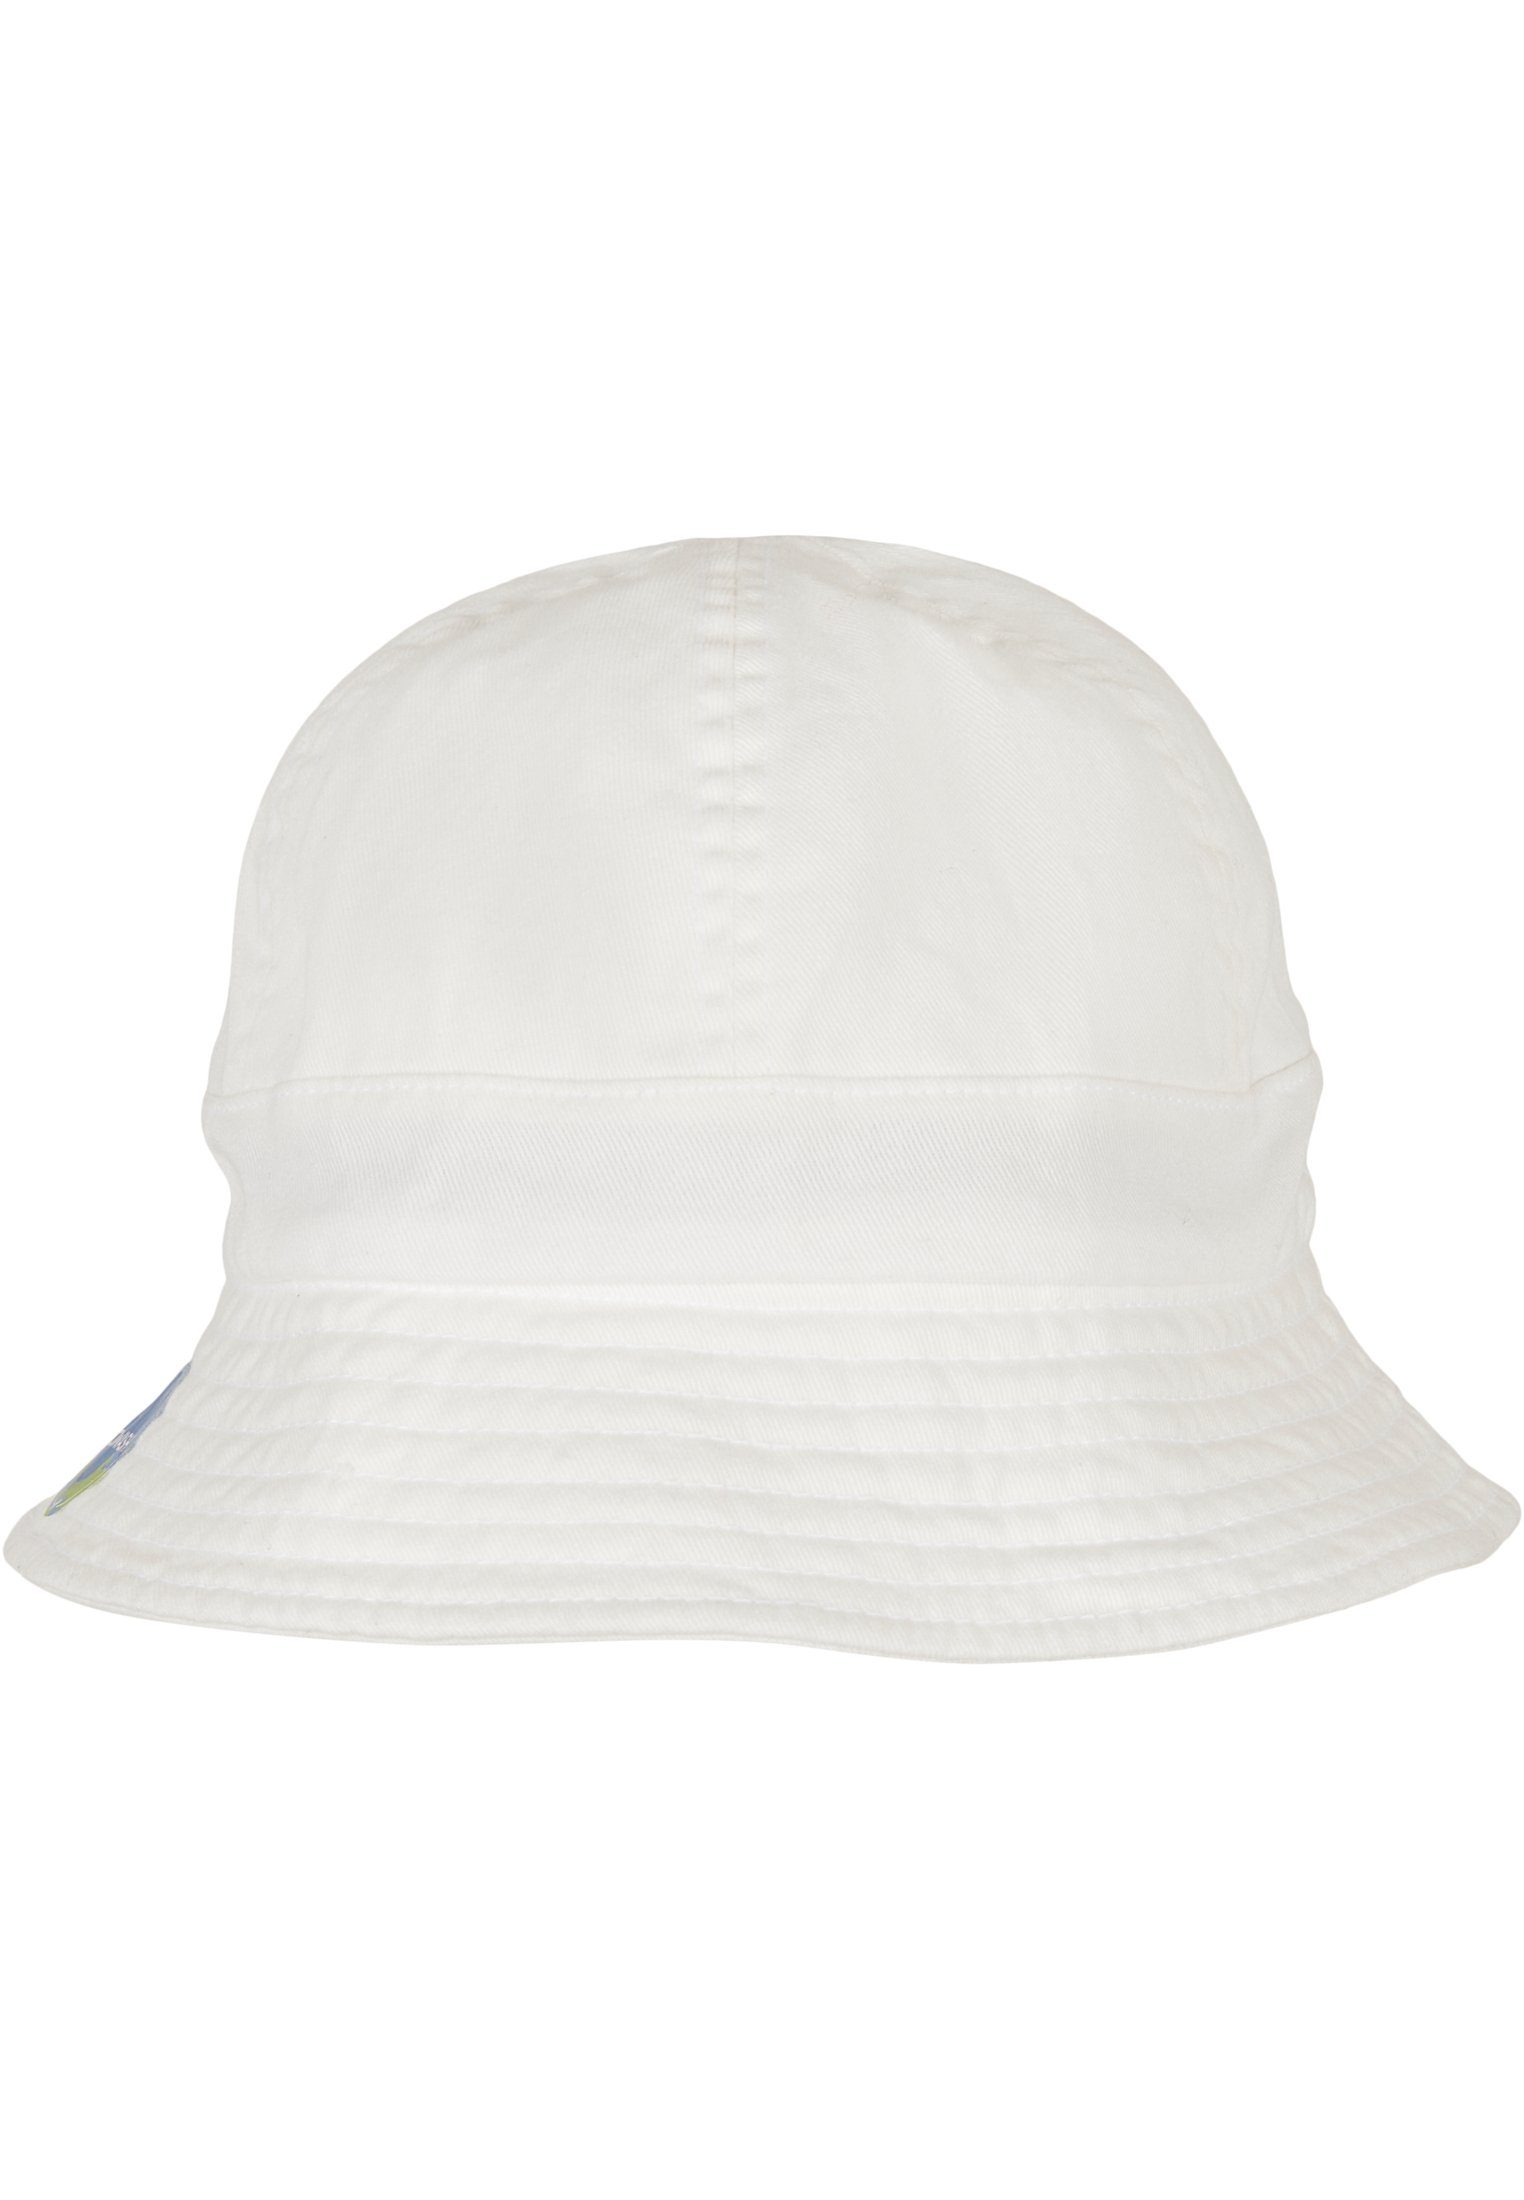 Flexfit Flex Cap Accessoires Eco white Tennis Hat Washing Notop Flexfit